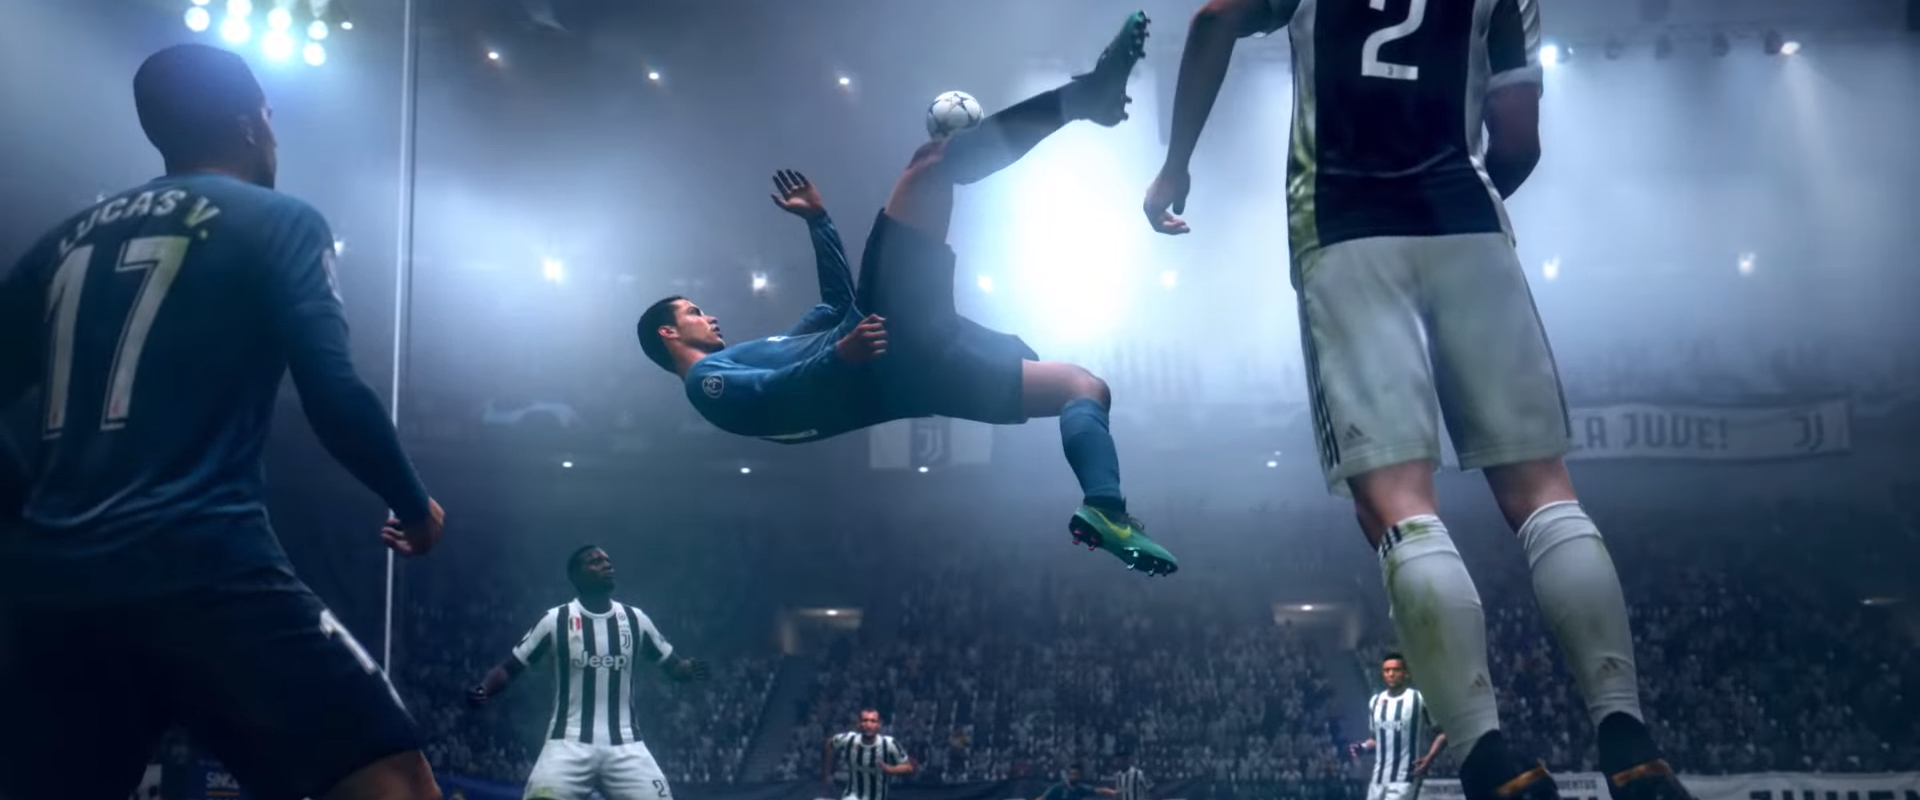 Felfedték a FIFA19-ben alkalmazott gameplay módosításokat